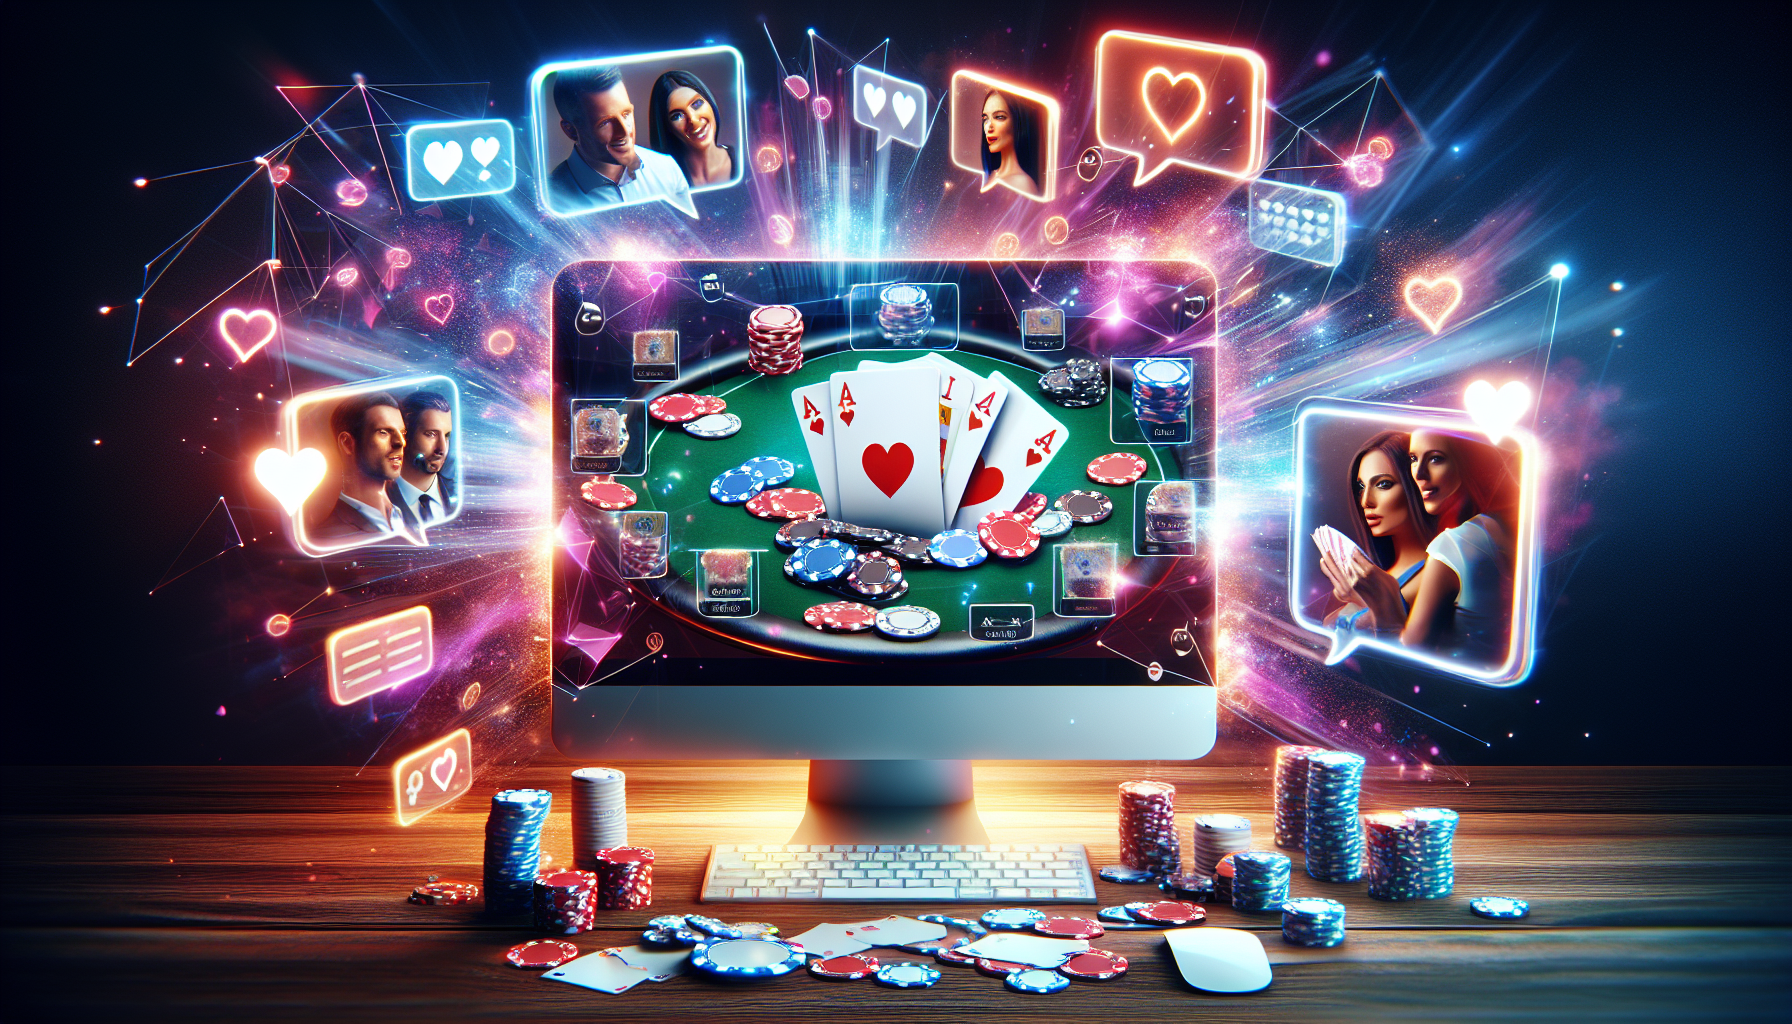 découvrez les meilleurs sites de poker en ligne pour jouer et gagner de l'argent. profitez d'une large sélection de jeux de poker et de tournois excitants.